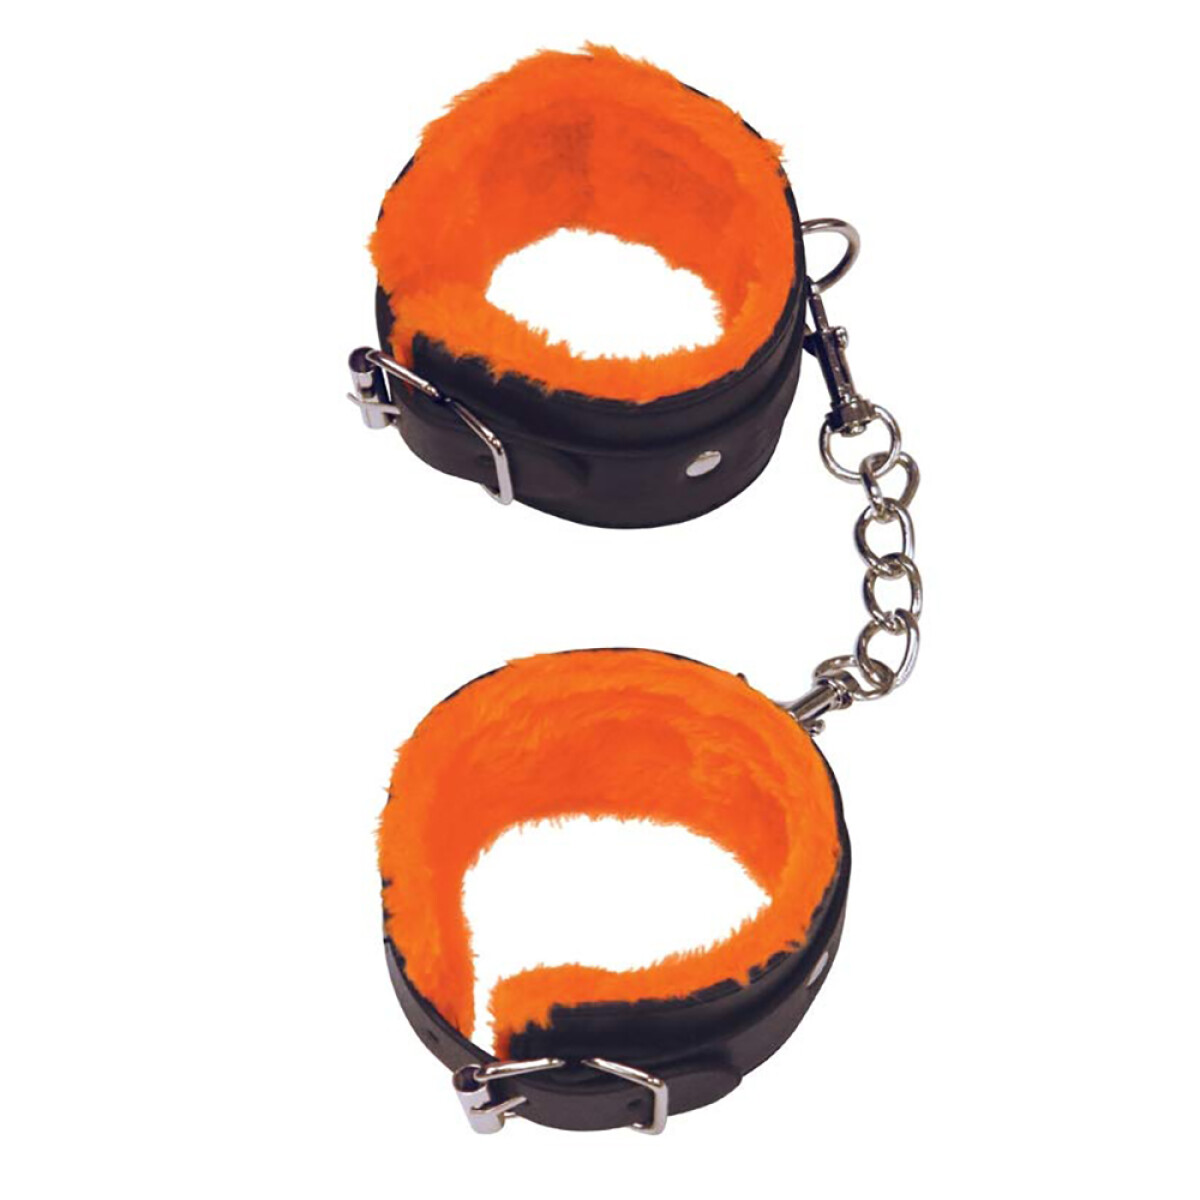 Esposas Love Cuffs Wrist Orange is the New Black 